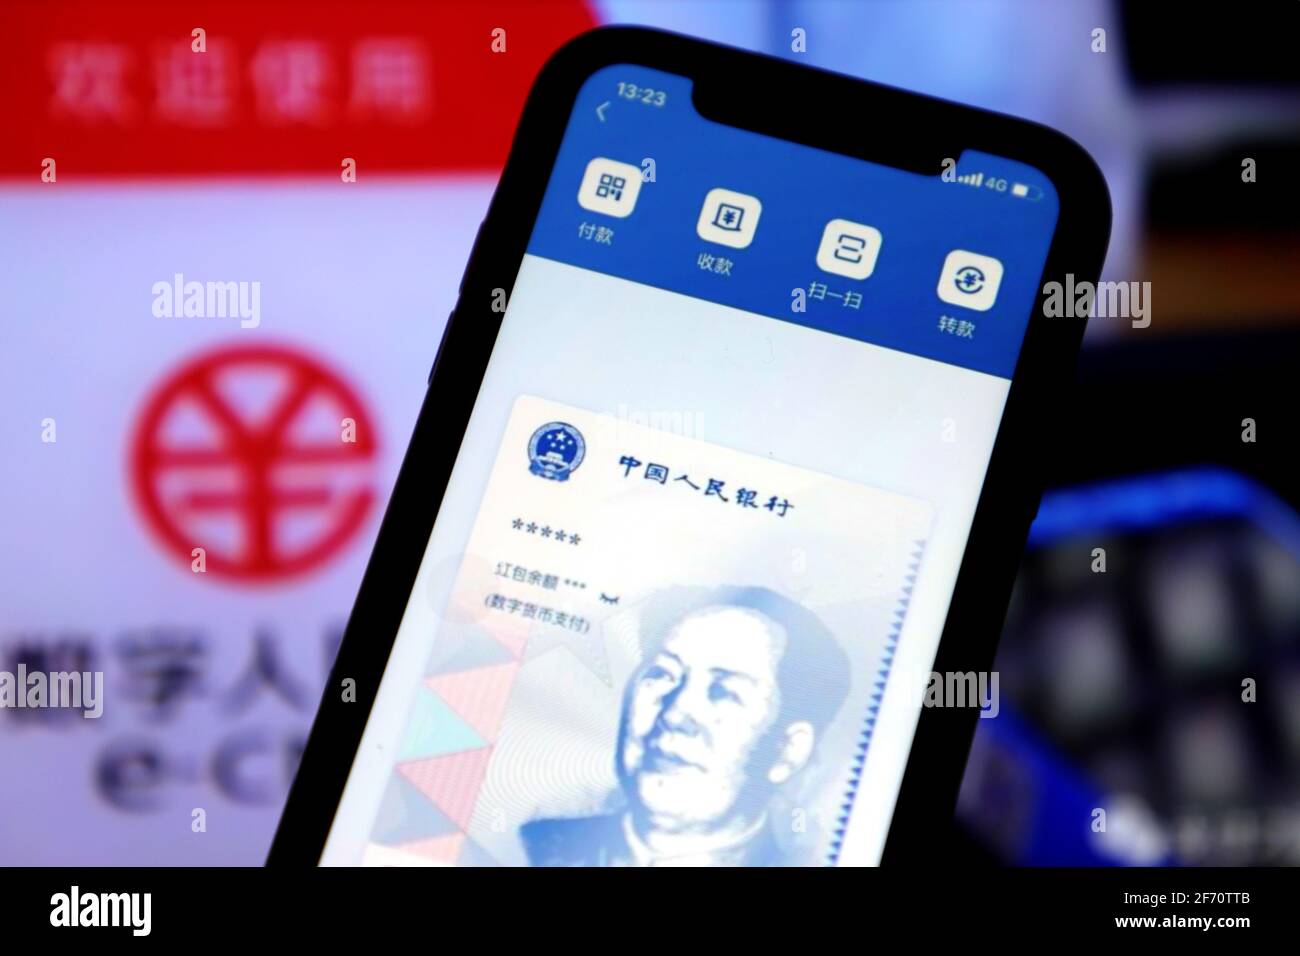 YICHANG, CINA- 2 APRILE 2021 - RMB digitale visualizzato sui telefoni  cellulari, Yichang City, Provincia di Hubei, Cina, 2 aprile, 2021. La  cerimonia di lancio del progetto pilota digitale RMB dell'Università di